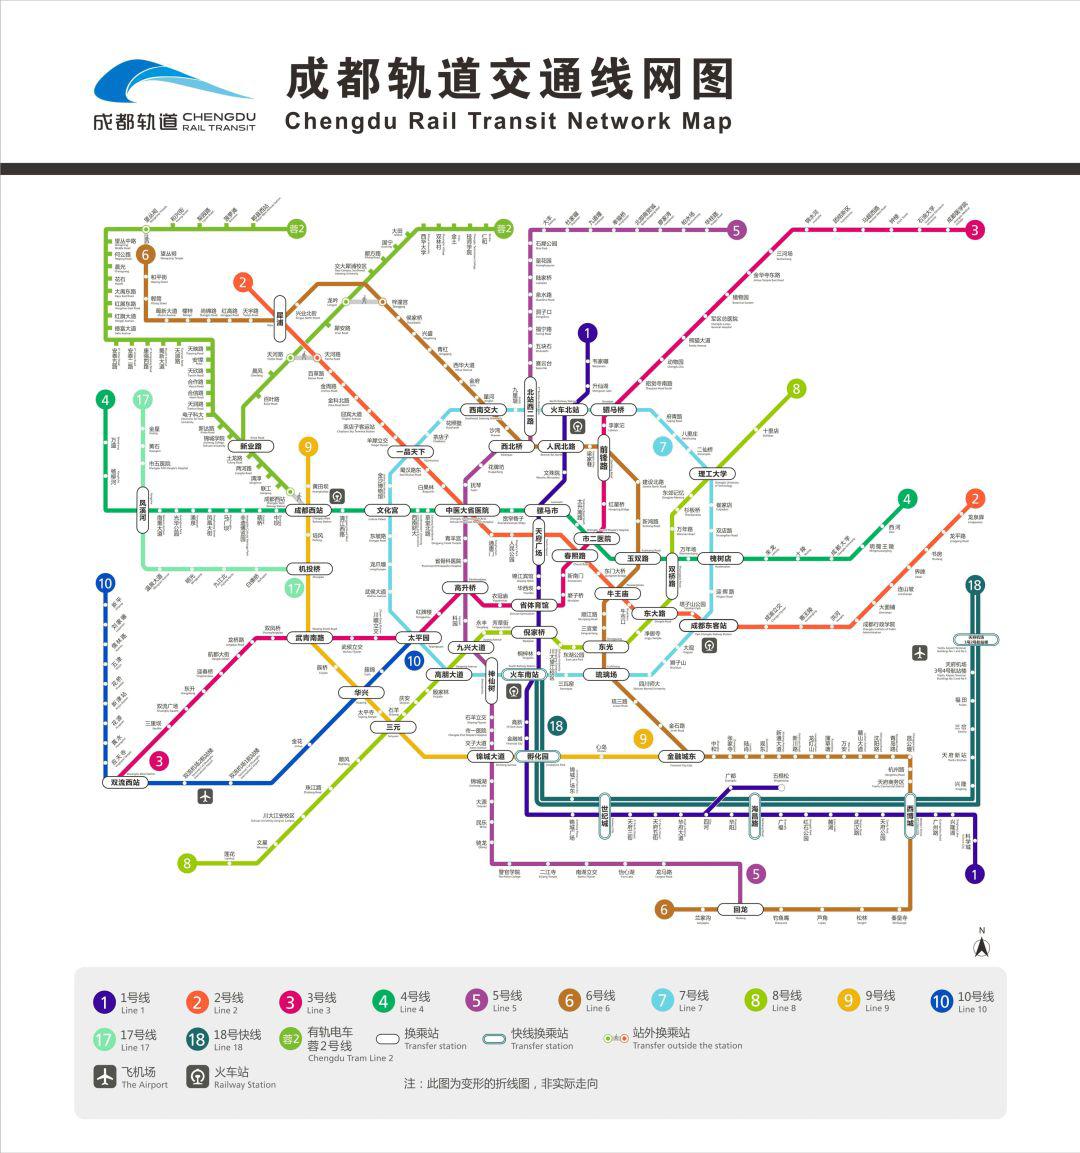 【出行】快了快了!成都地铁今年开通的5条线路最新进展(线路)